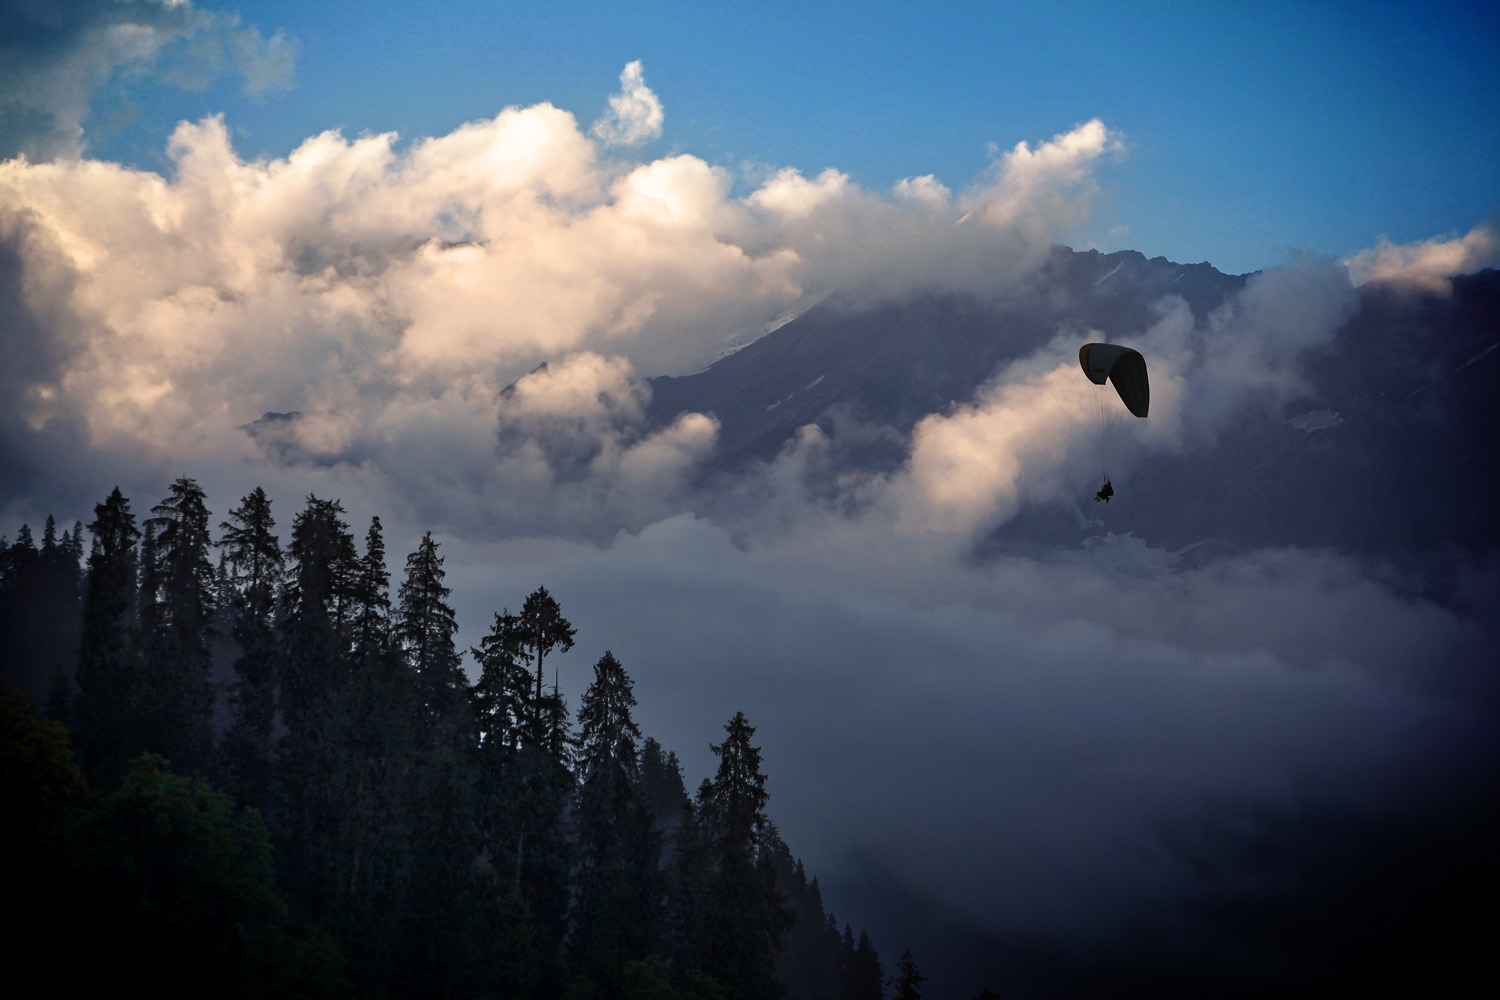 Paragliding Solang Valley, Himachal Pradesh, India